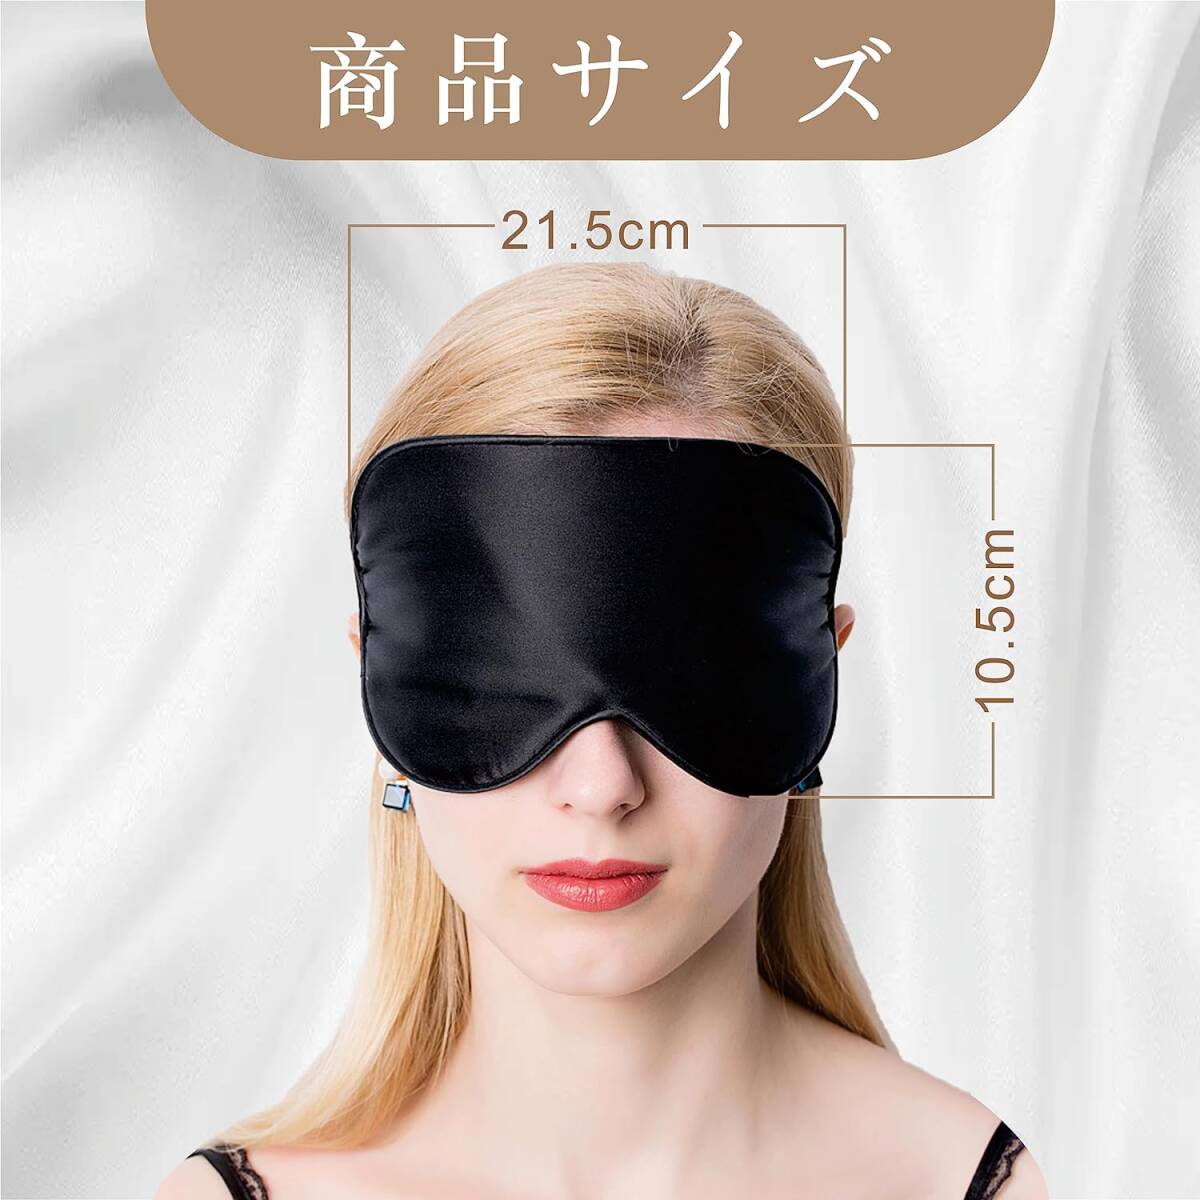 贅沢な純シルクアイマスク - 快適な目の休息とストレス解消 リラックス効果のある真絹眼マスク - 快眠をサポート 快適な睡眠とリラックスを_画像6